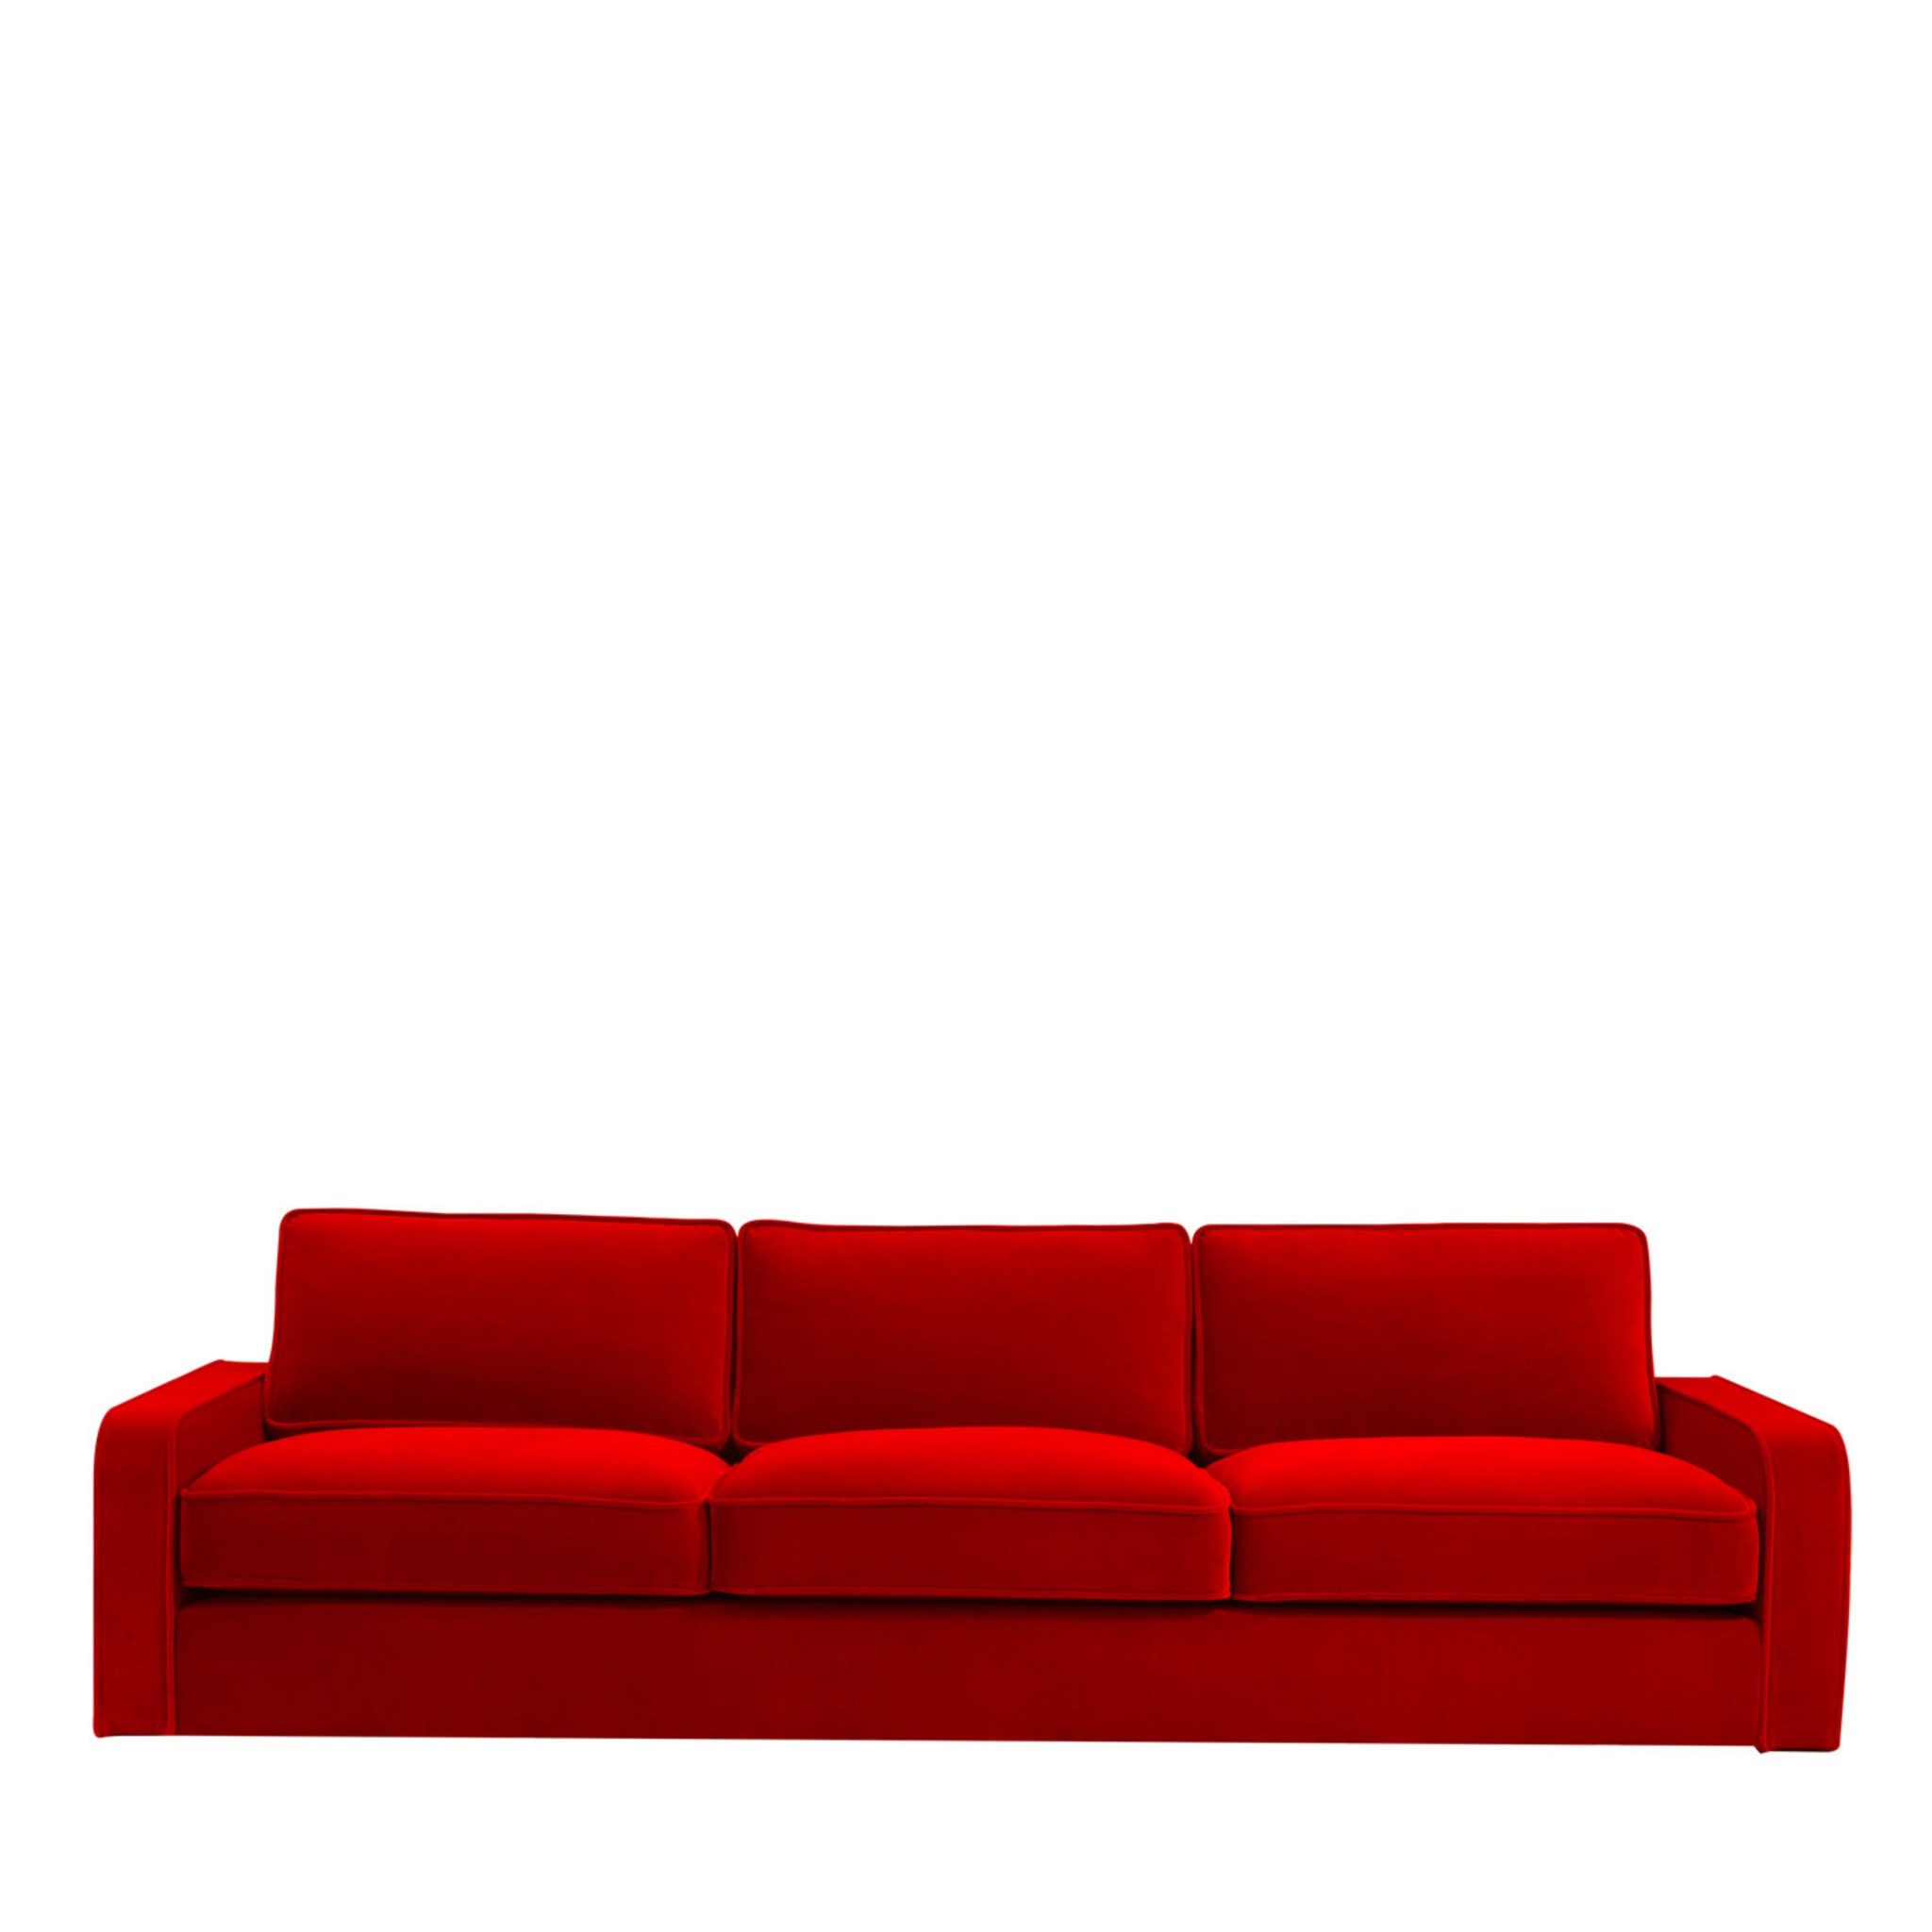 Romeo Red Sofa - Main view